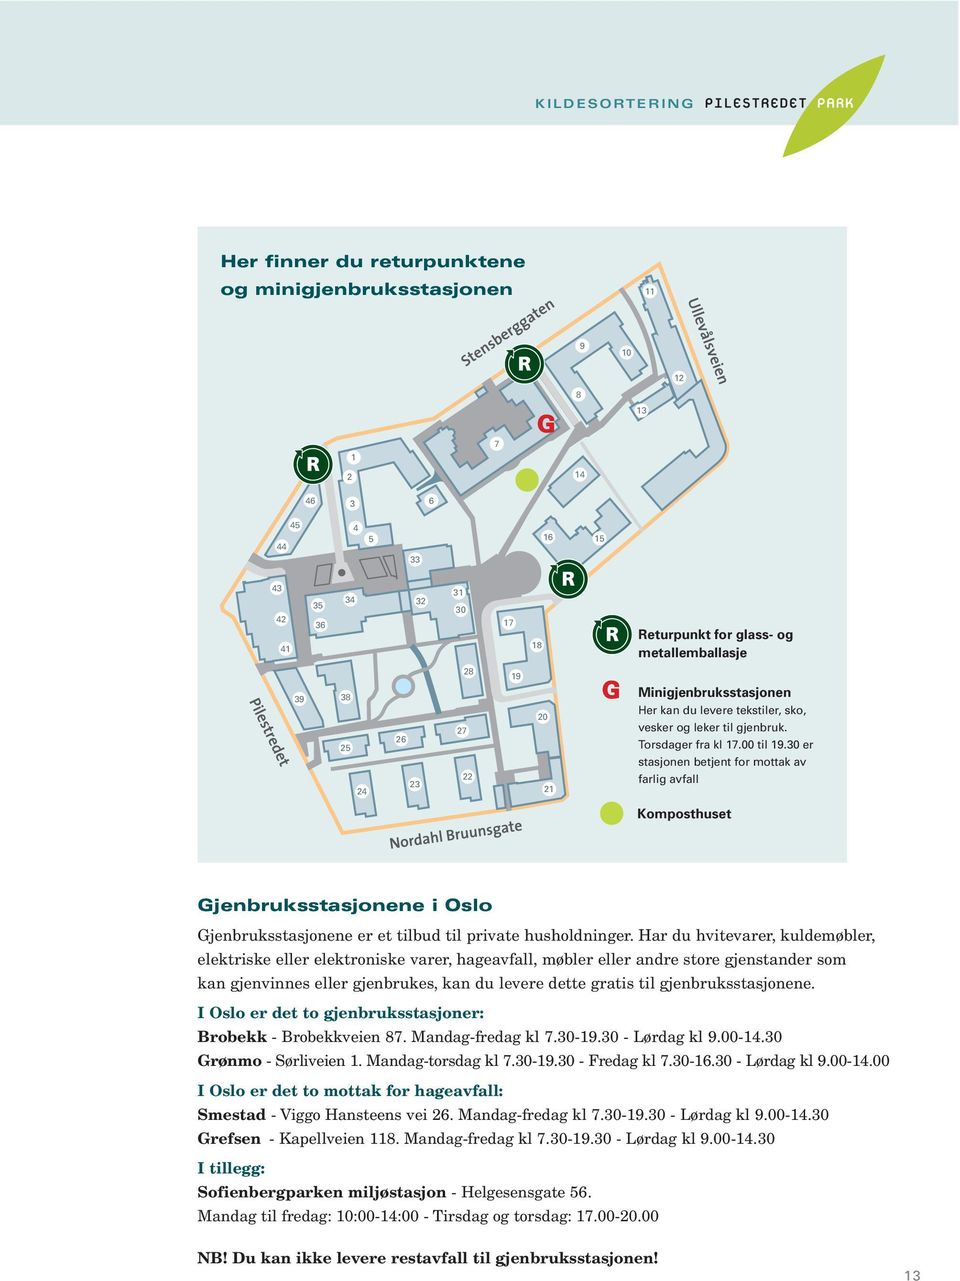 30 er stasjonen betjent for mottak av farlig avfall Komposthuset Gjenbruksstasjonene i Oslo Gjenbruksstasjonene er et tilbud til private husholdninger.